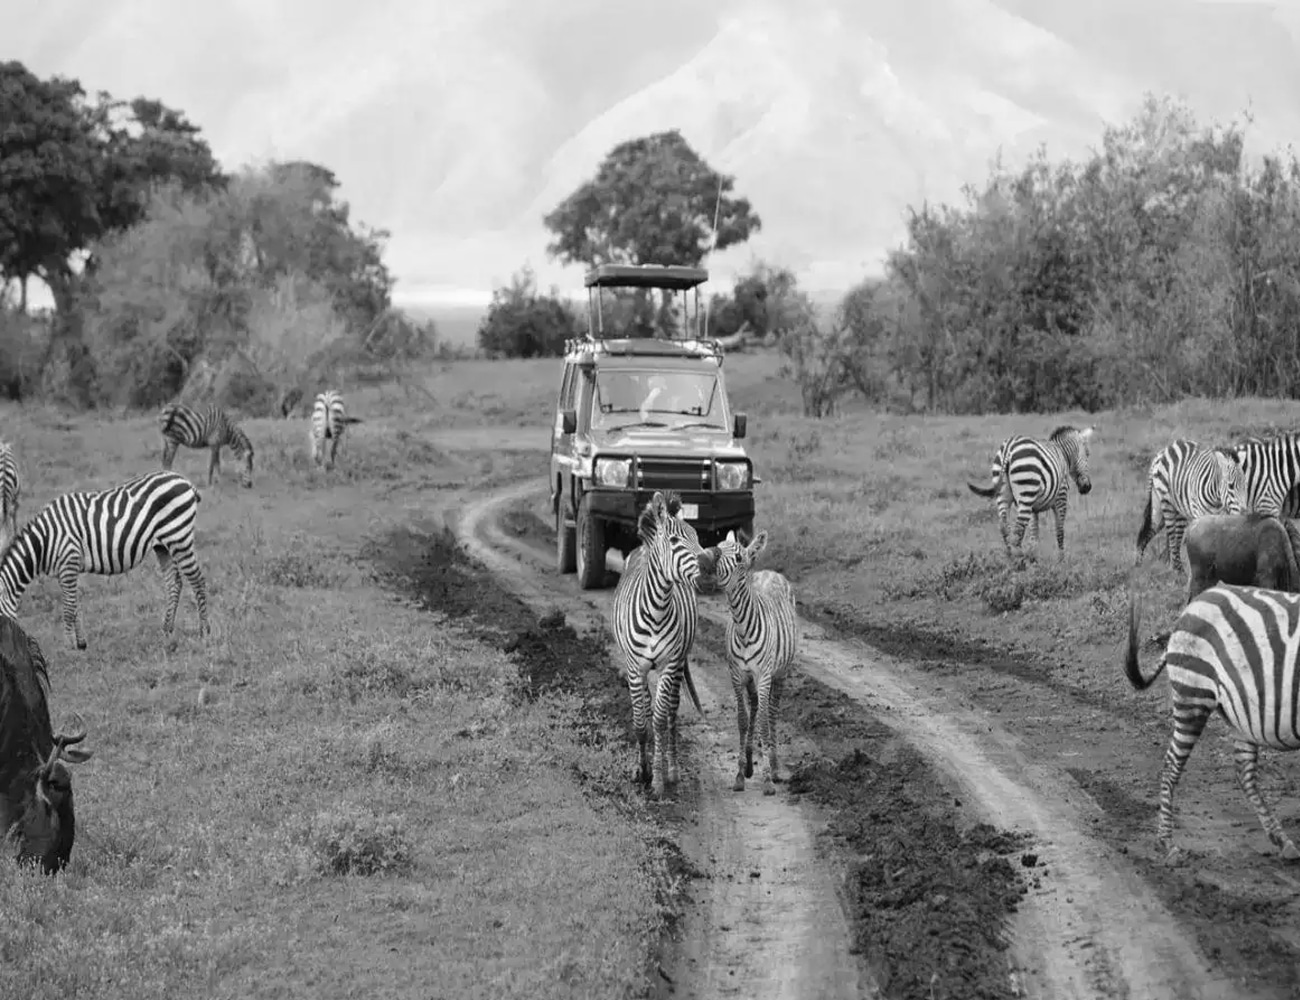 Wildlife at a Safari in Tanzania